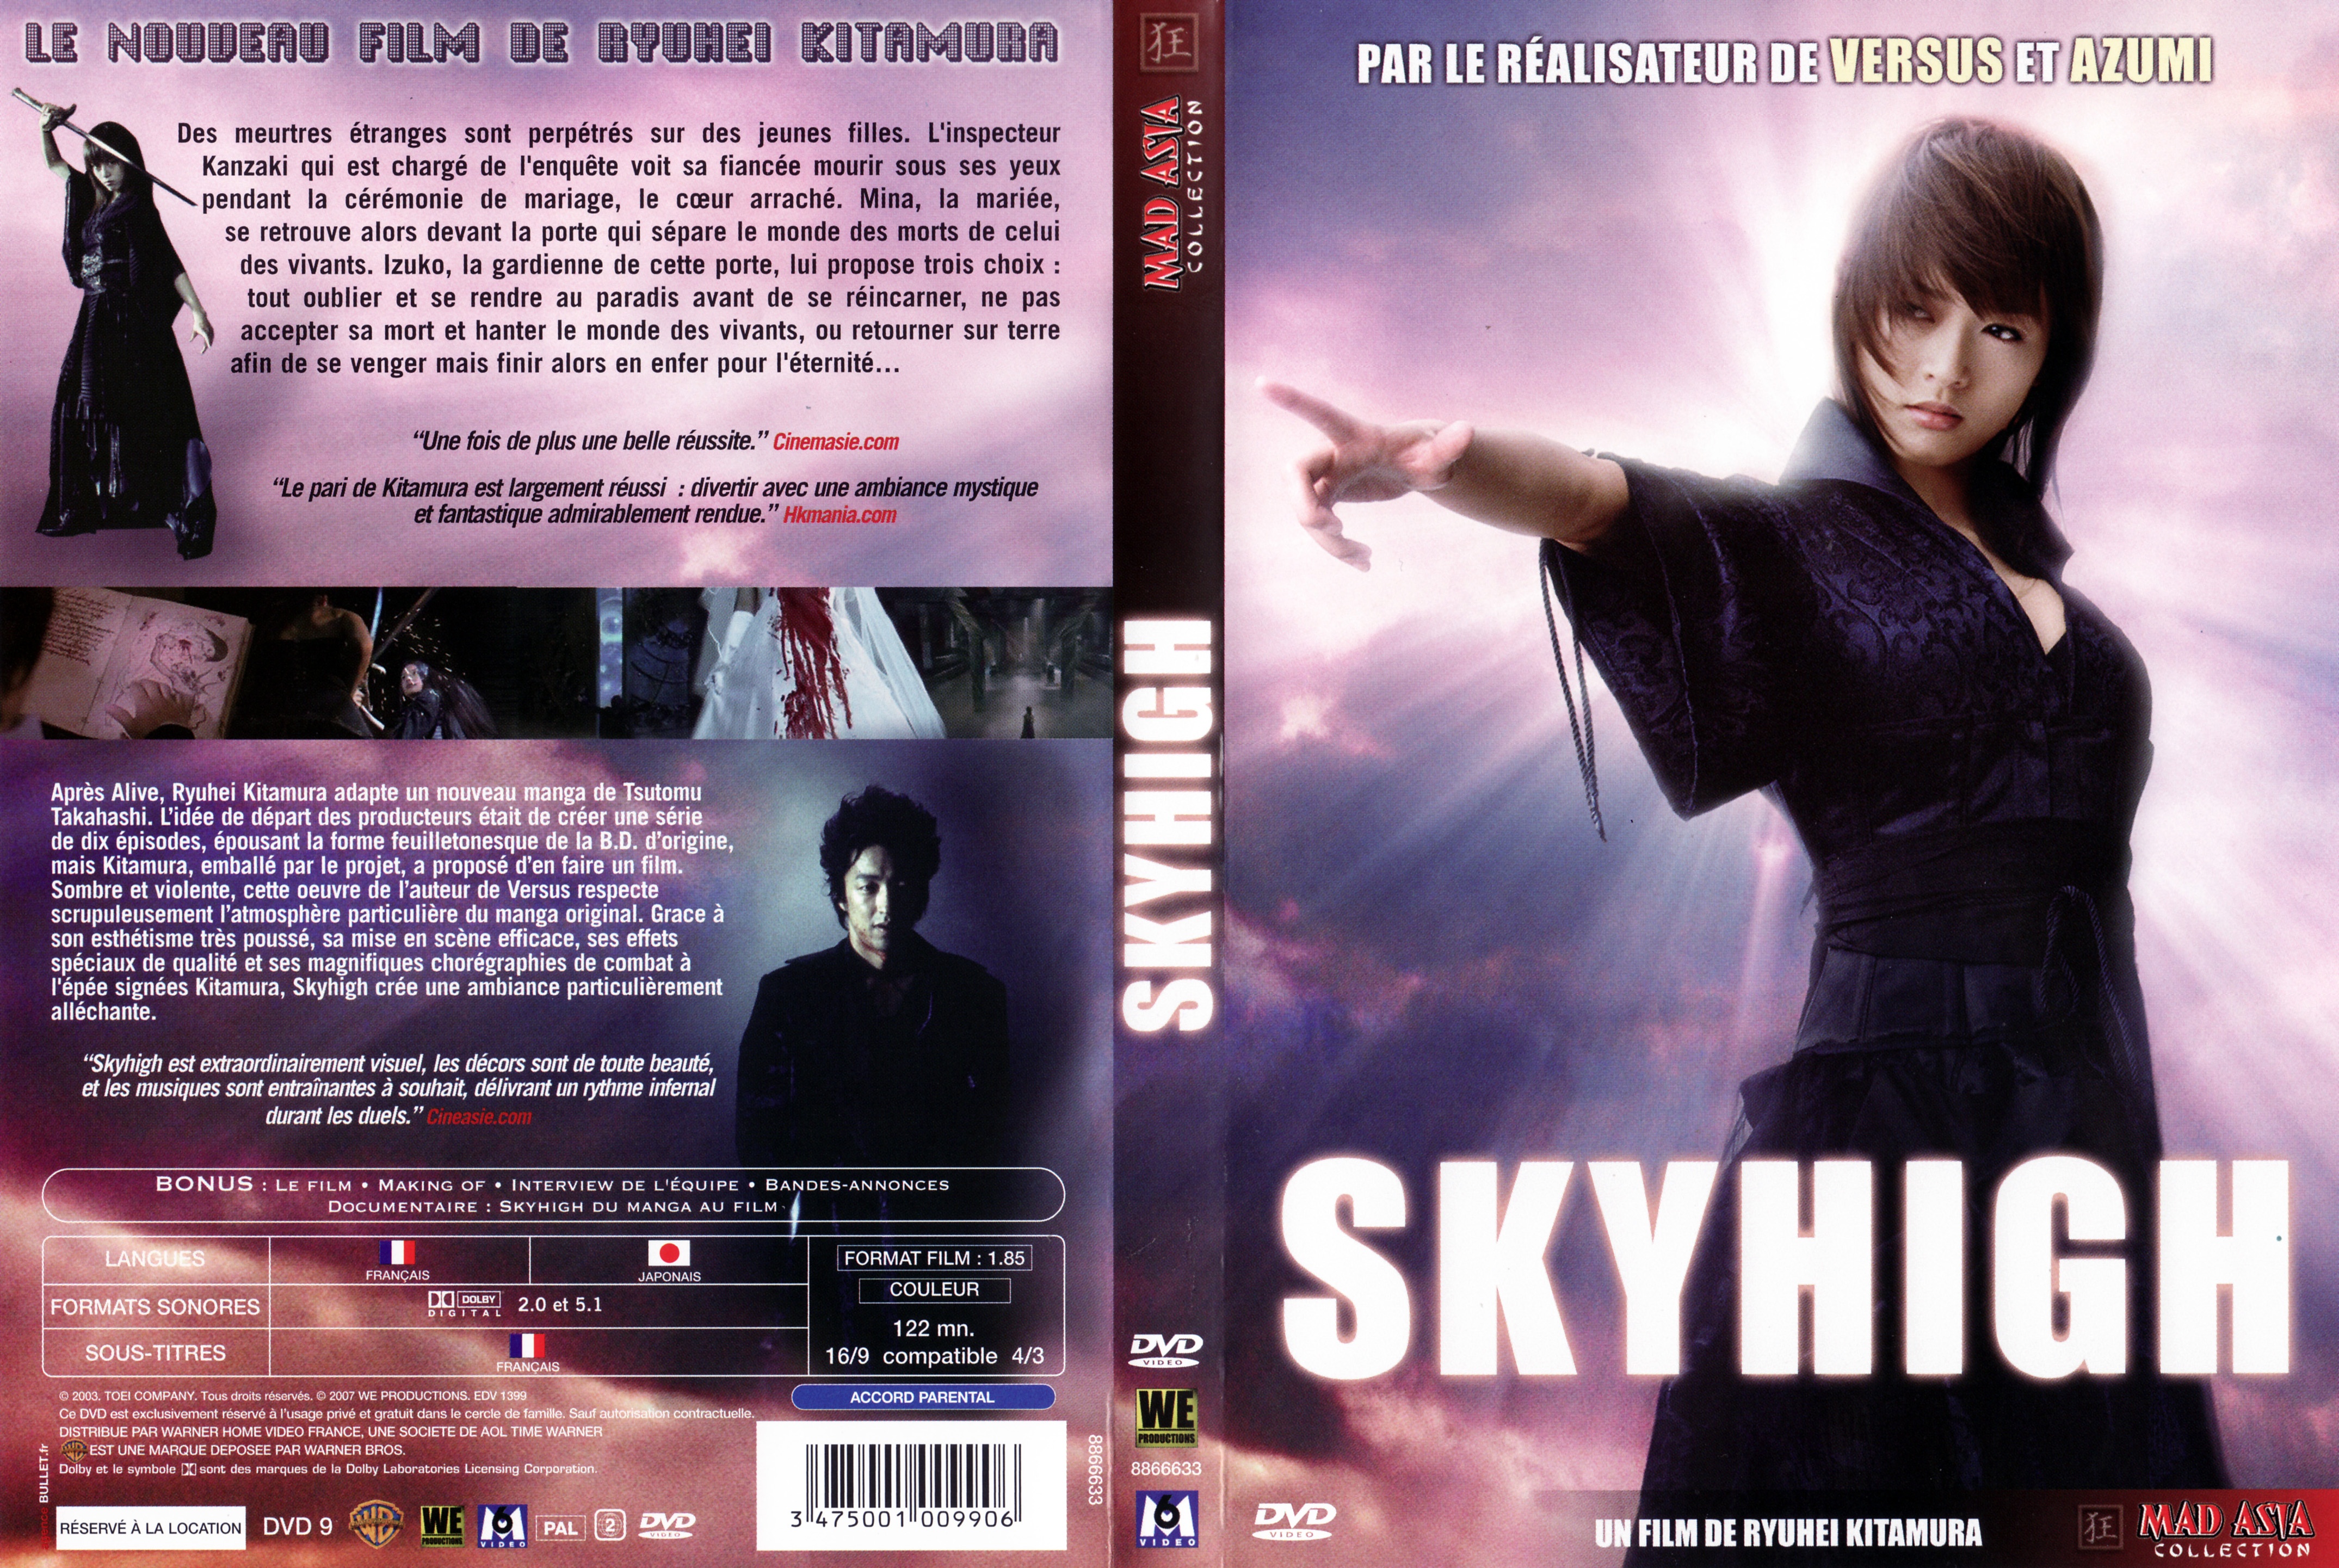 Jaquette DVD Skyhigh